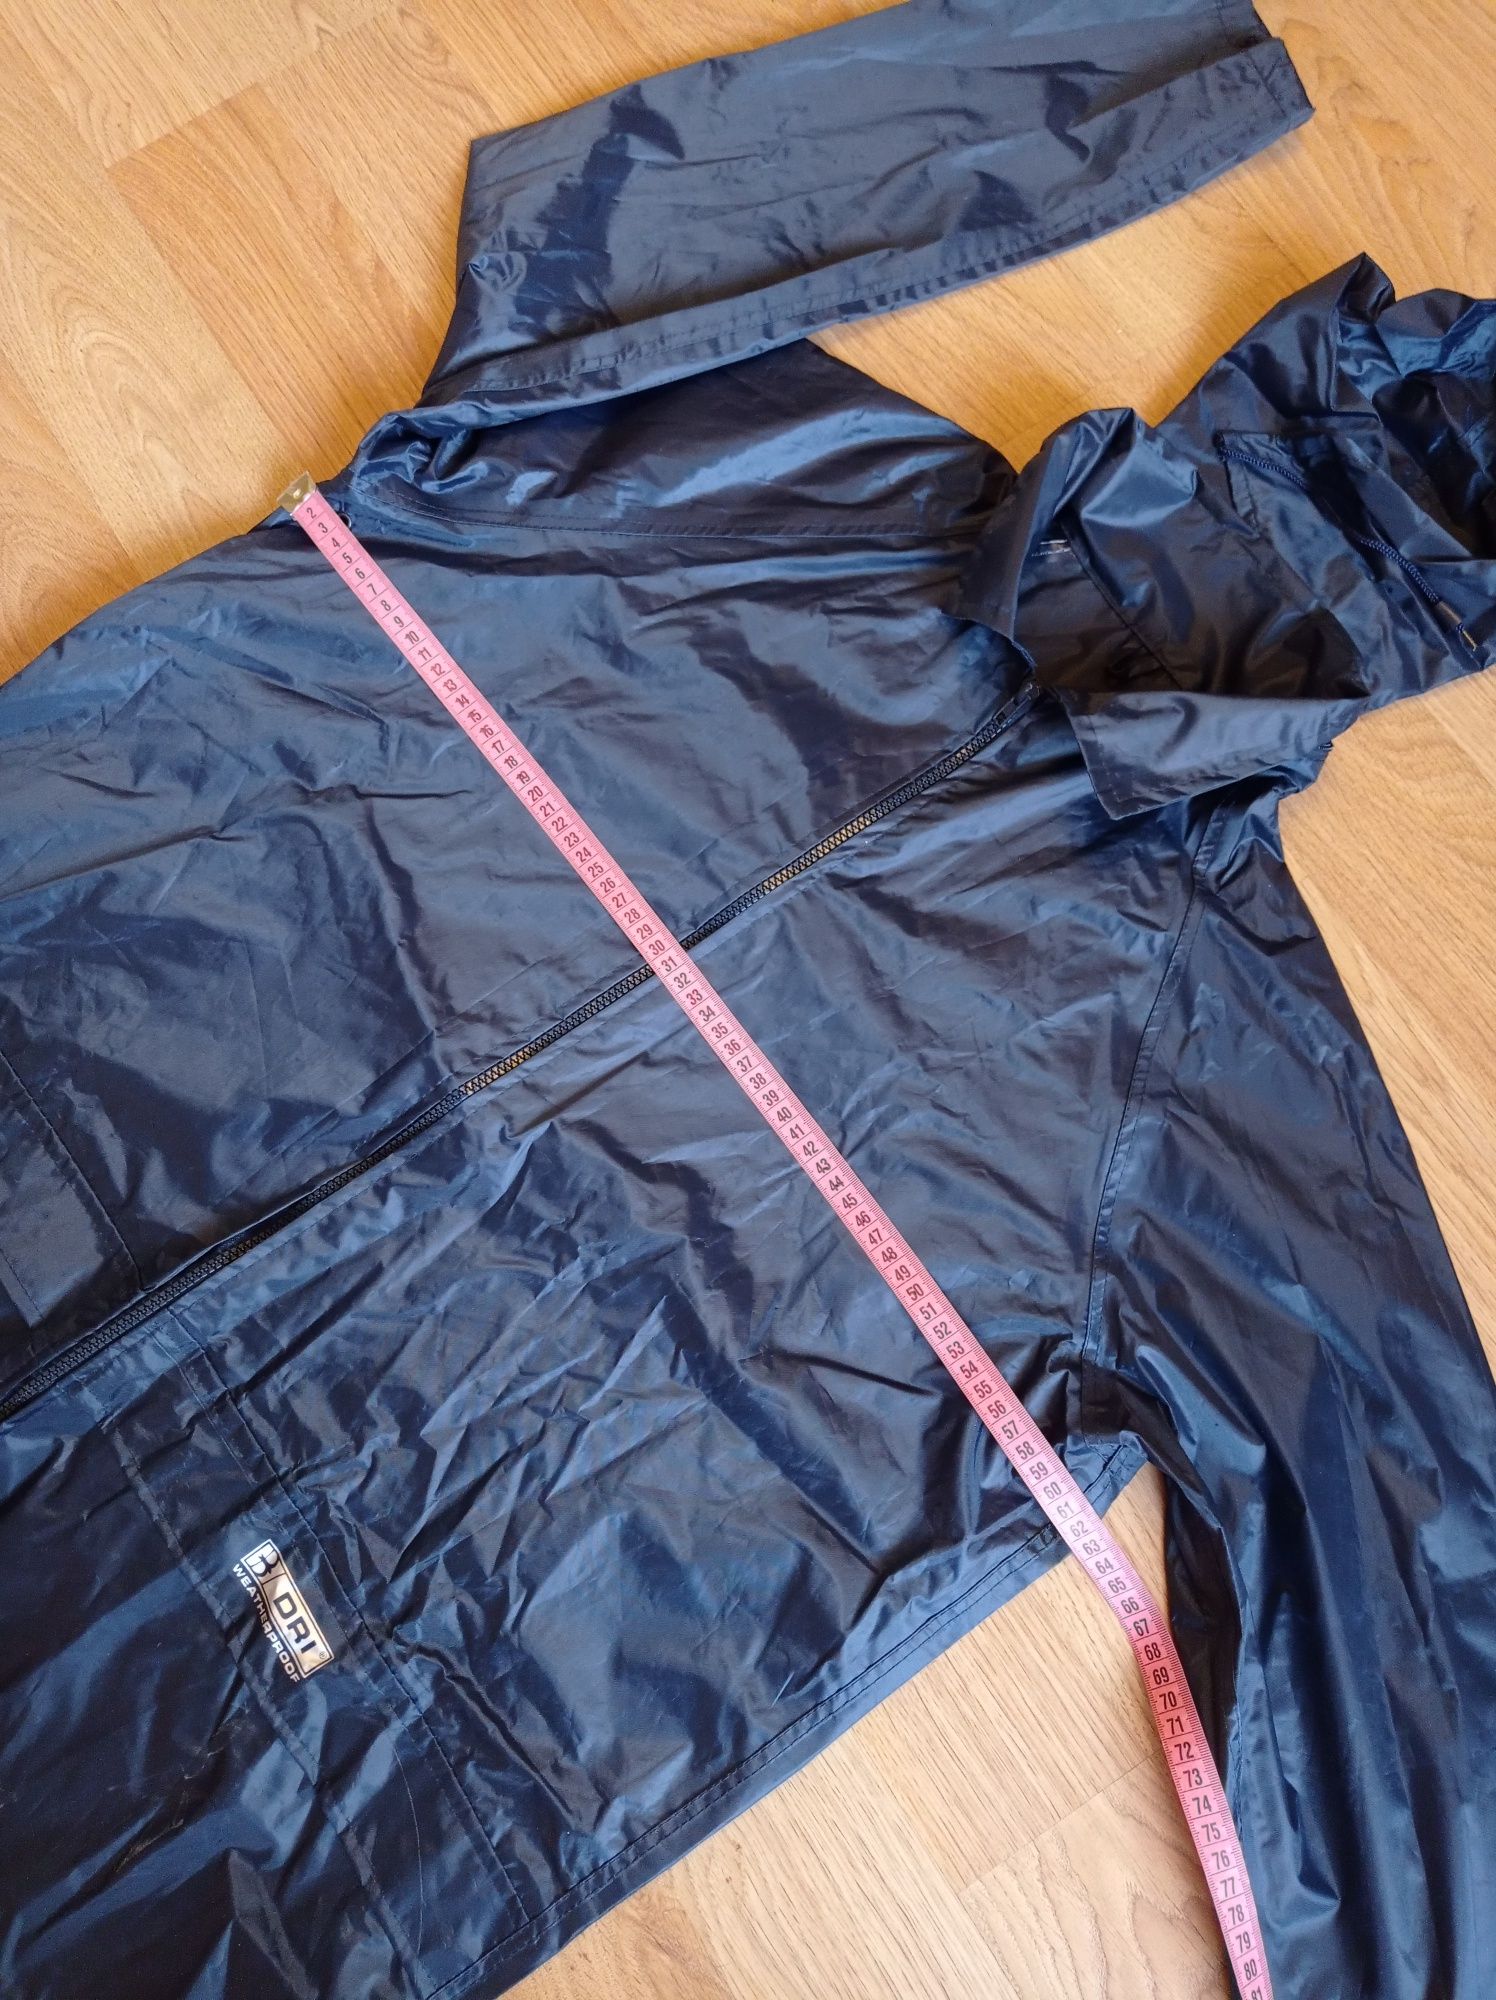 Дождевик штормовкик Куртка М/46-48 размер Новая